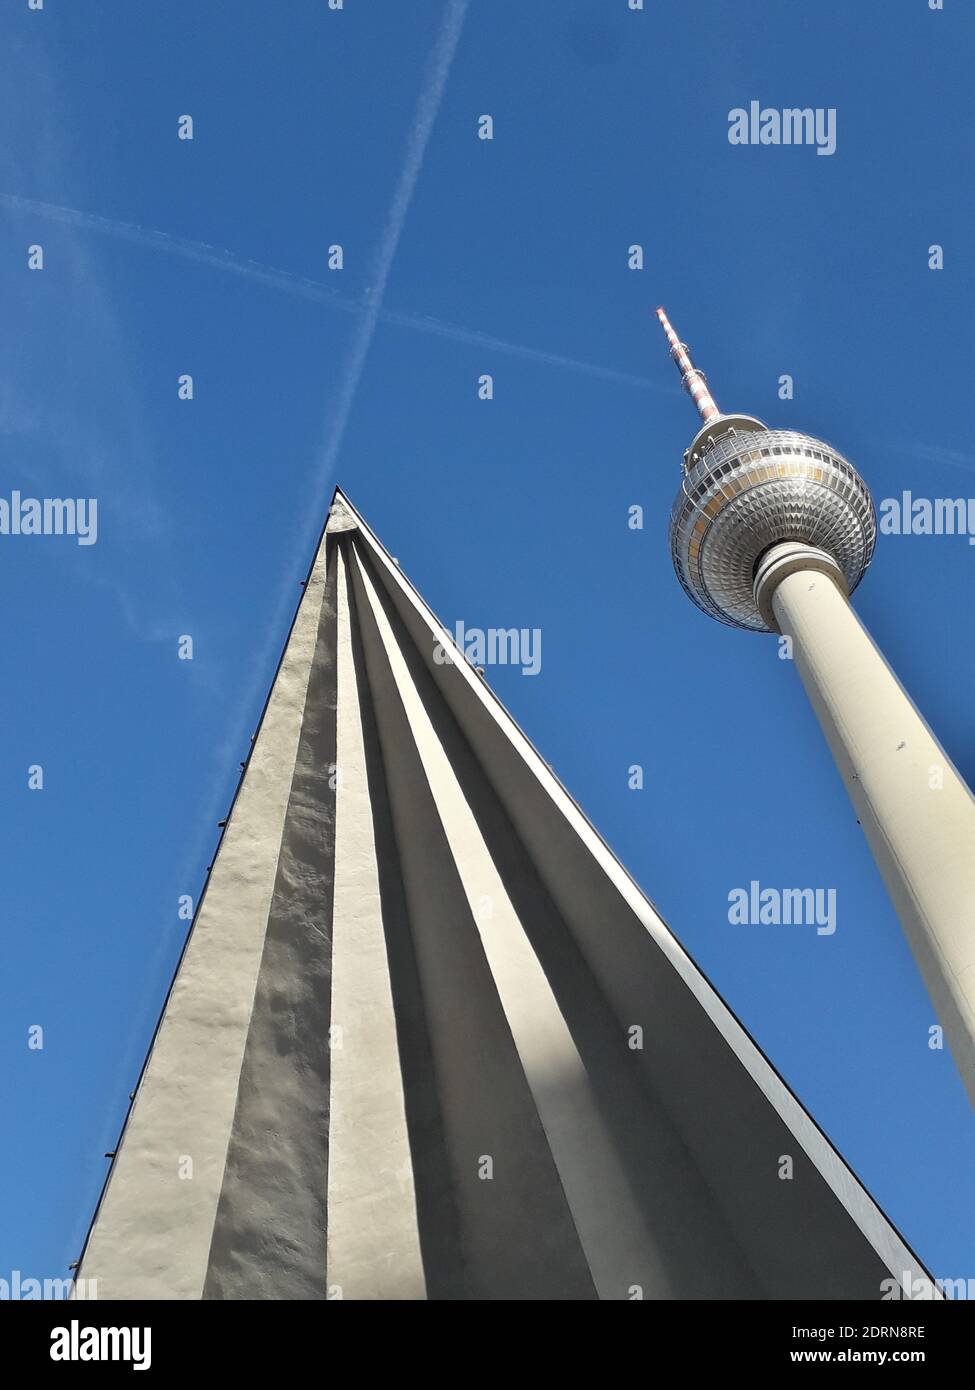 BERLIN, DEUTSCHLAND - 05. Dez 2020: Der Berliner Funkturm ist ein wichtiges Wahrzeichen der Stadt und des Landes. Auf einem blauen Himmel mit einem Gegengleit, der ihn überquert Stockfoto